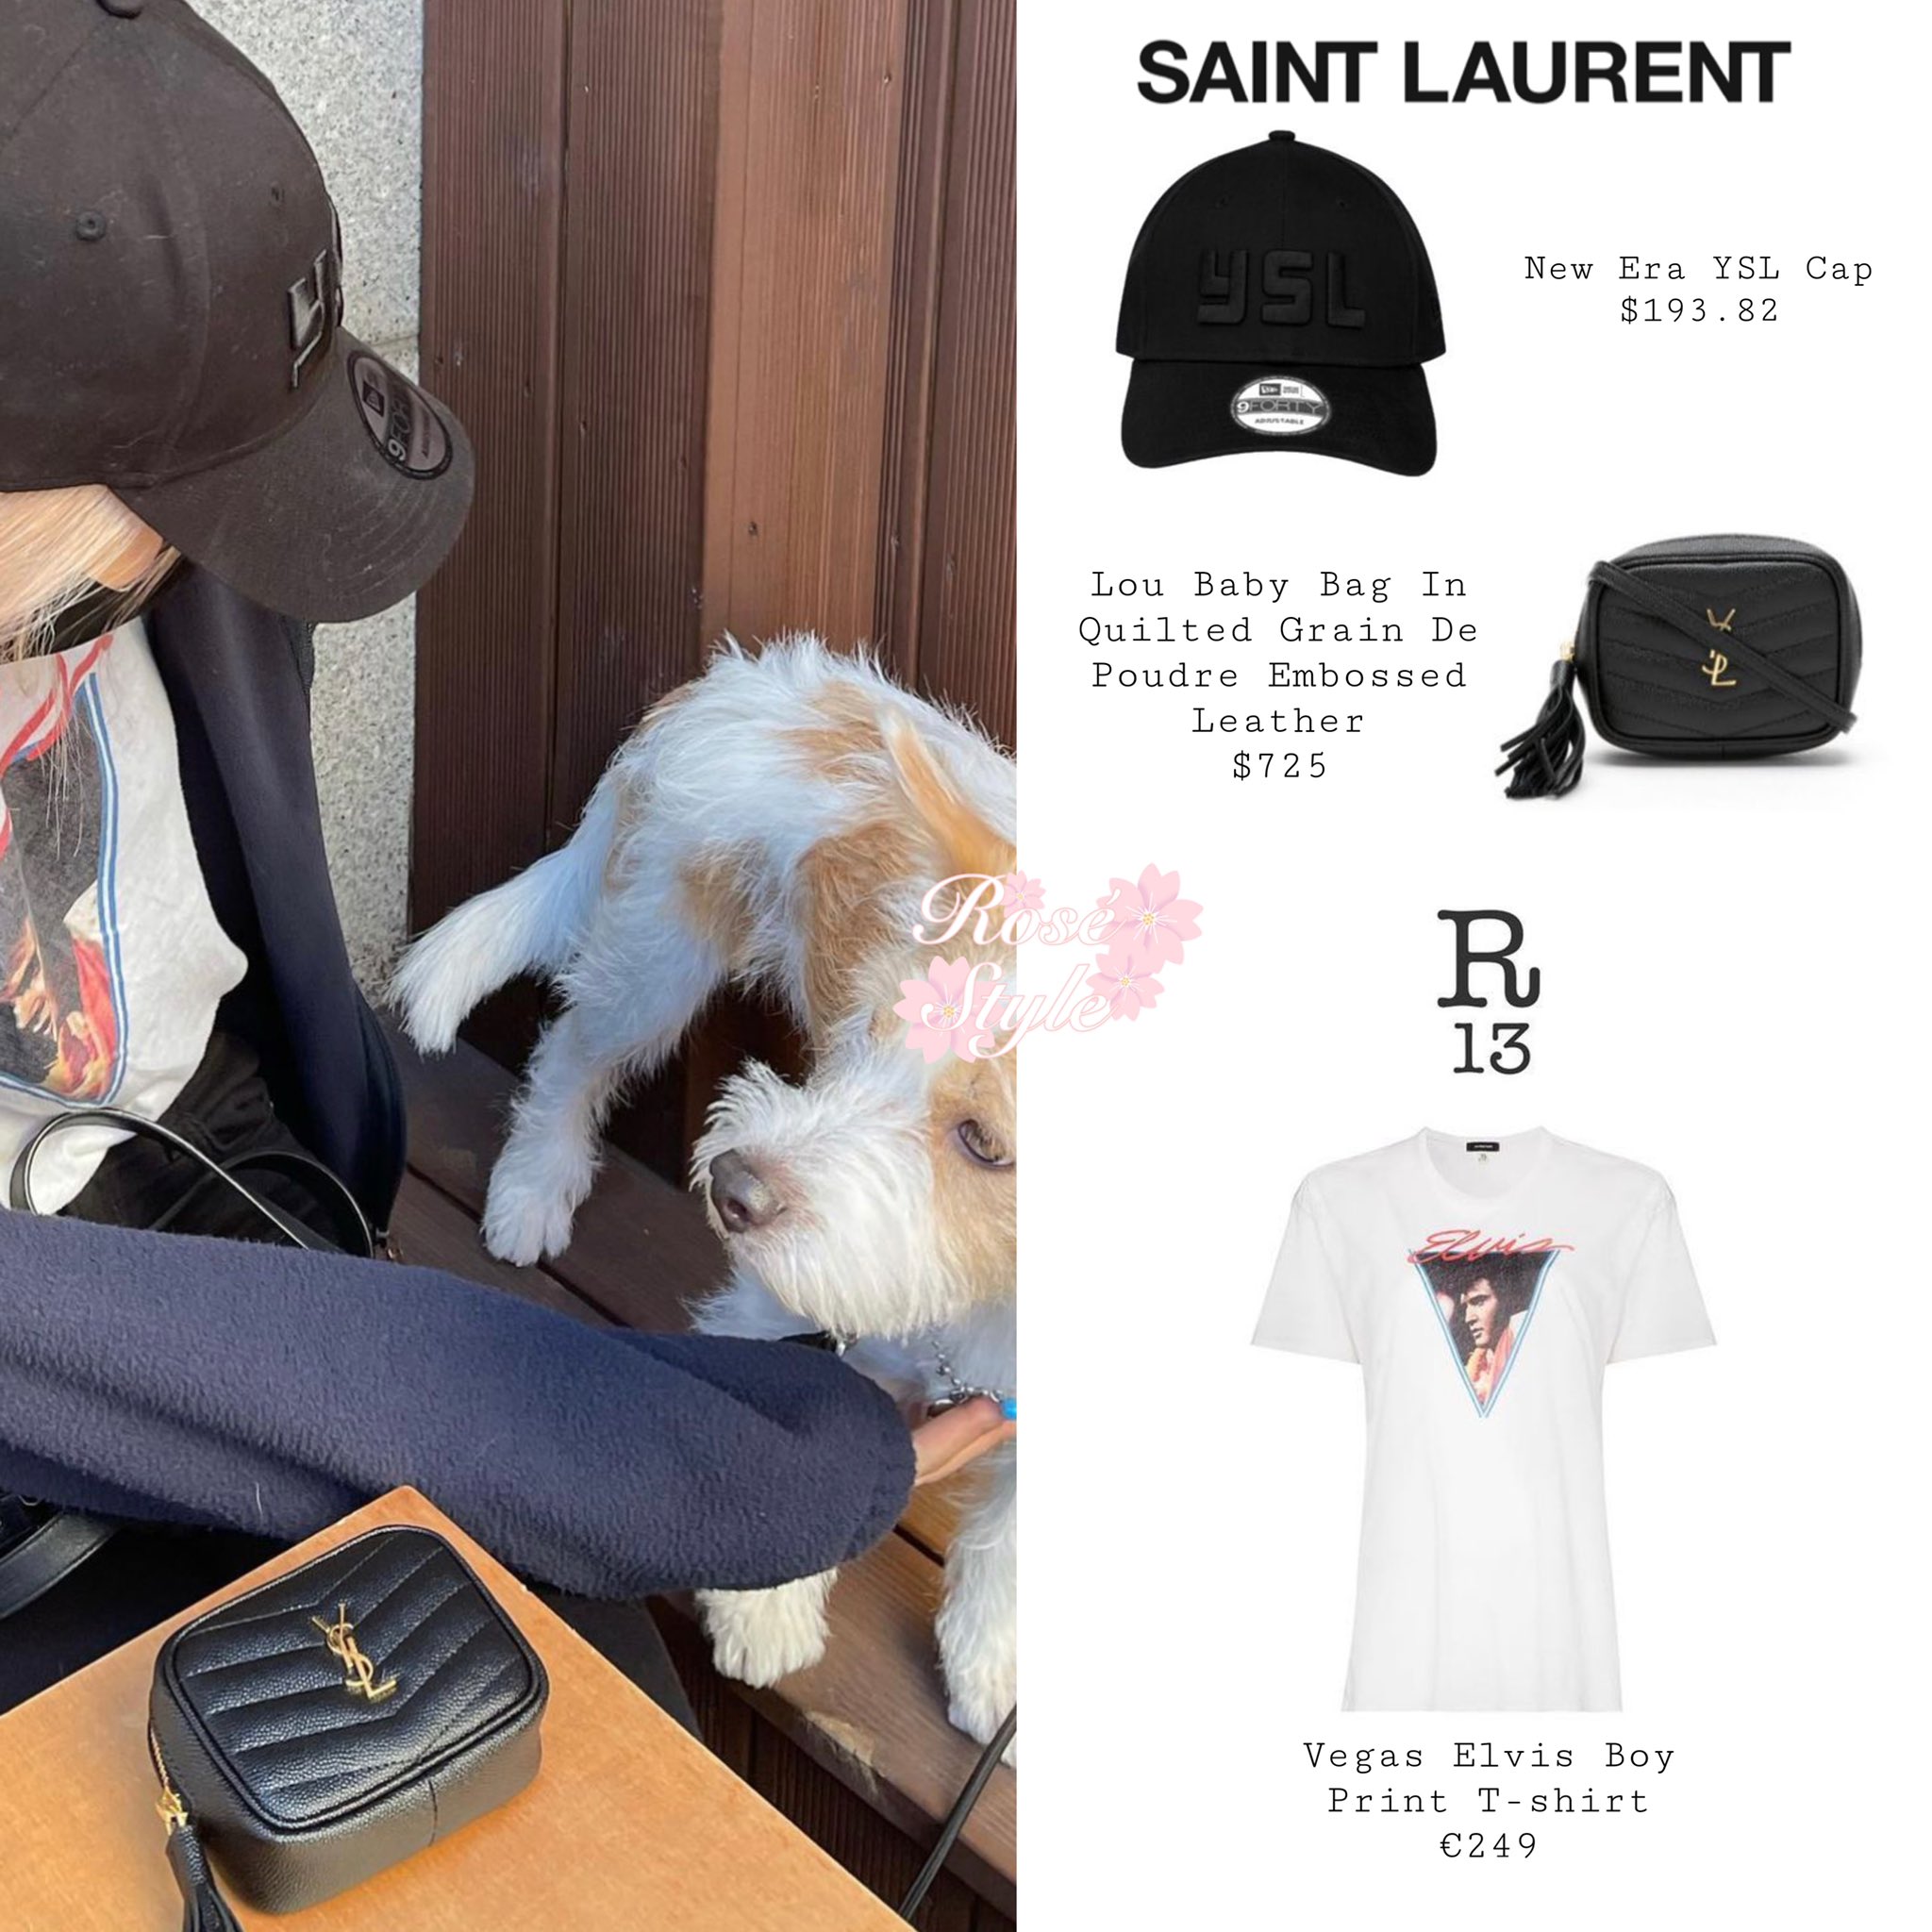 Inside Blackpink Singer Rosé's Saint Laurent Bag